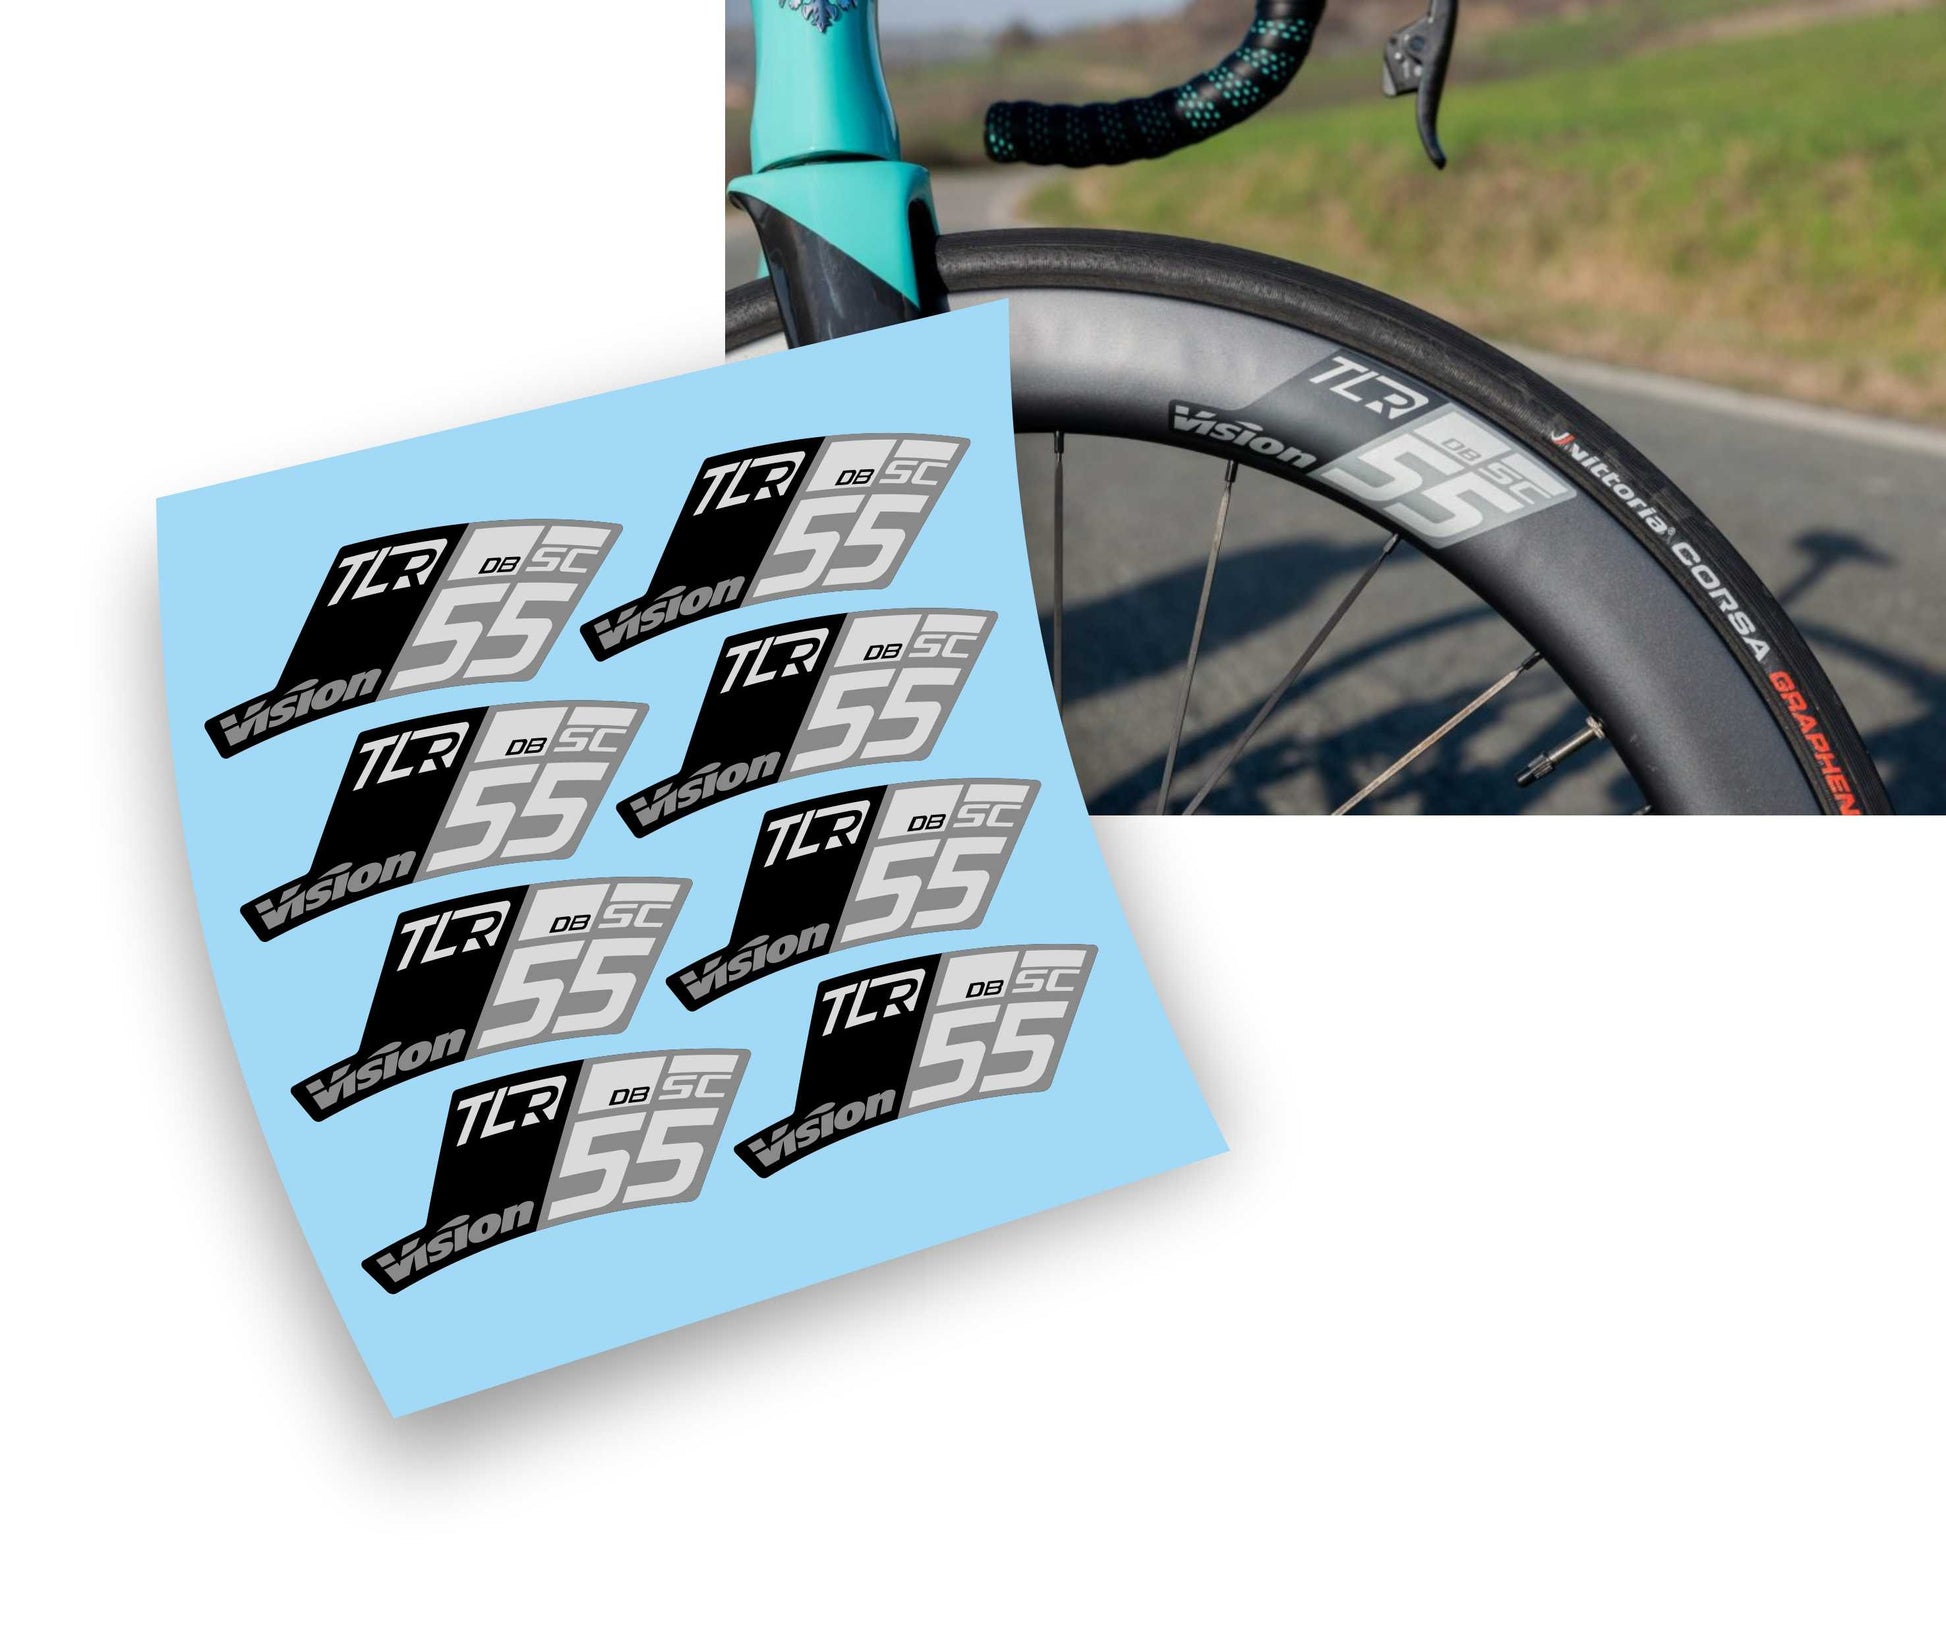 Vision SC 55 TLR Disc Kit adesivi per cerchi bicicletta da corsa